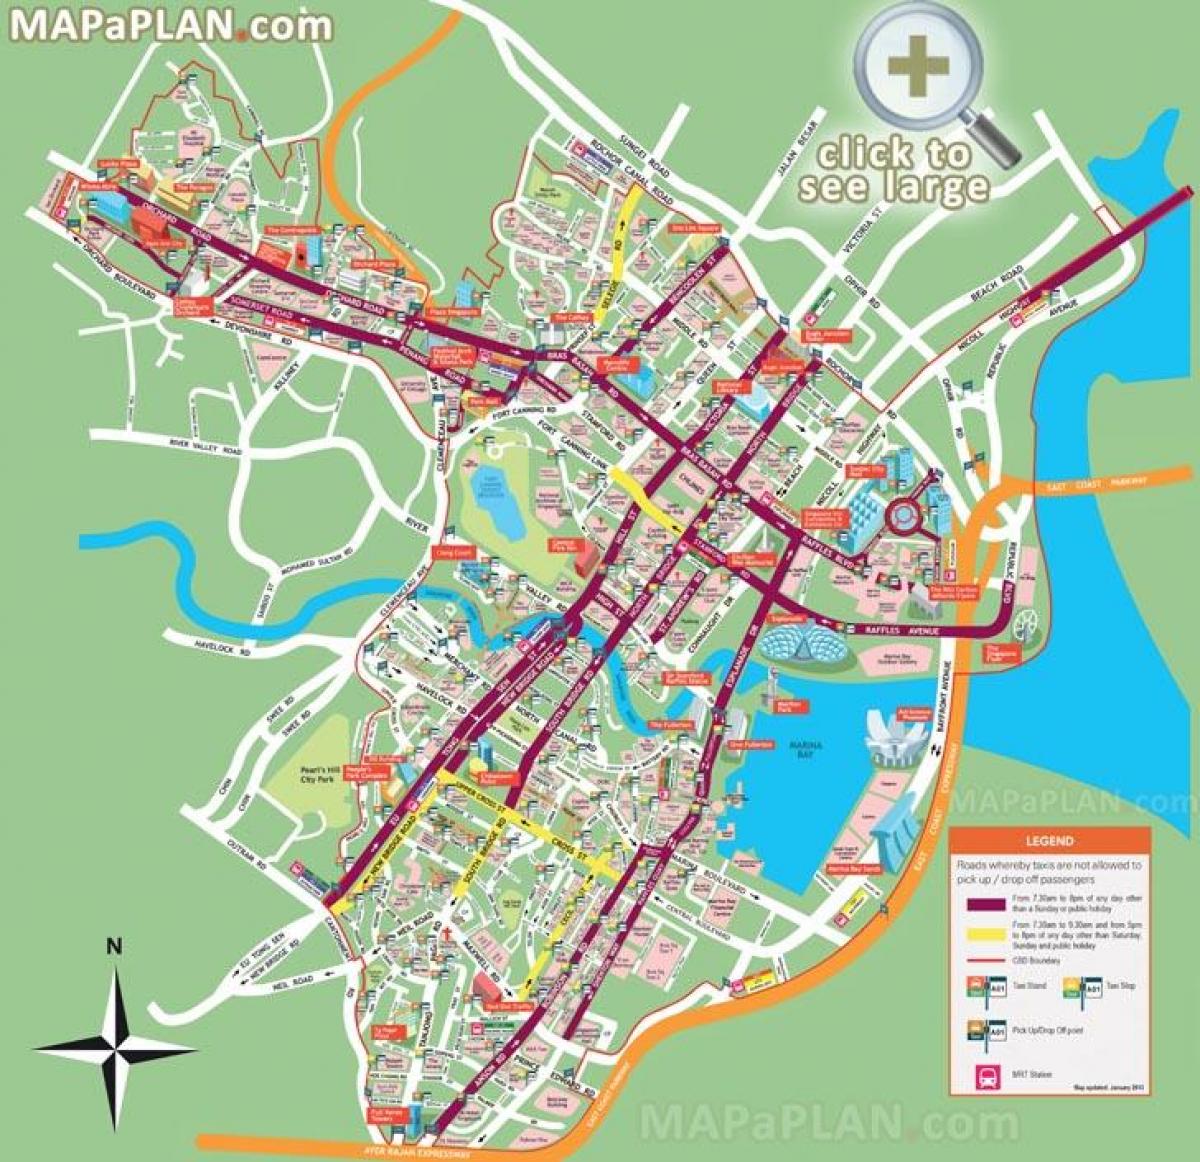 Singapūras lankytinų vietų žemėlapis